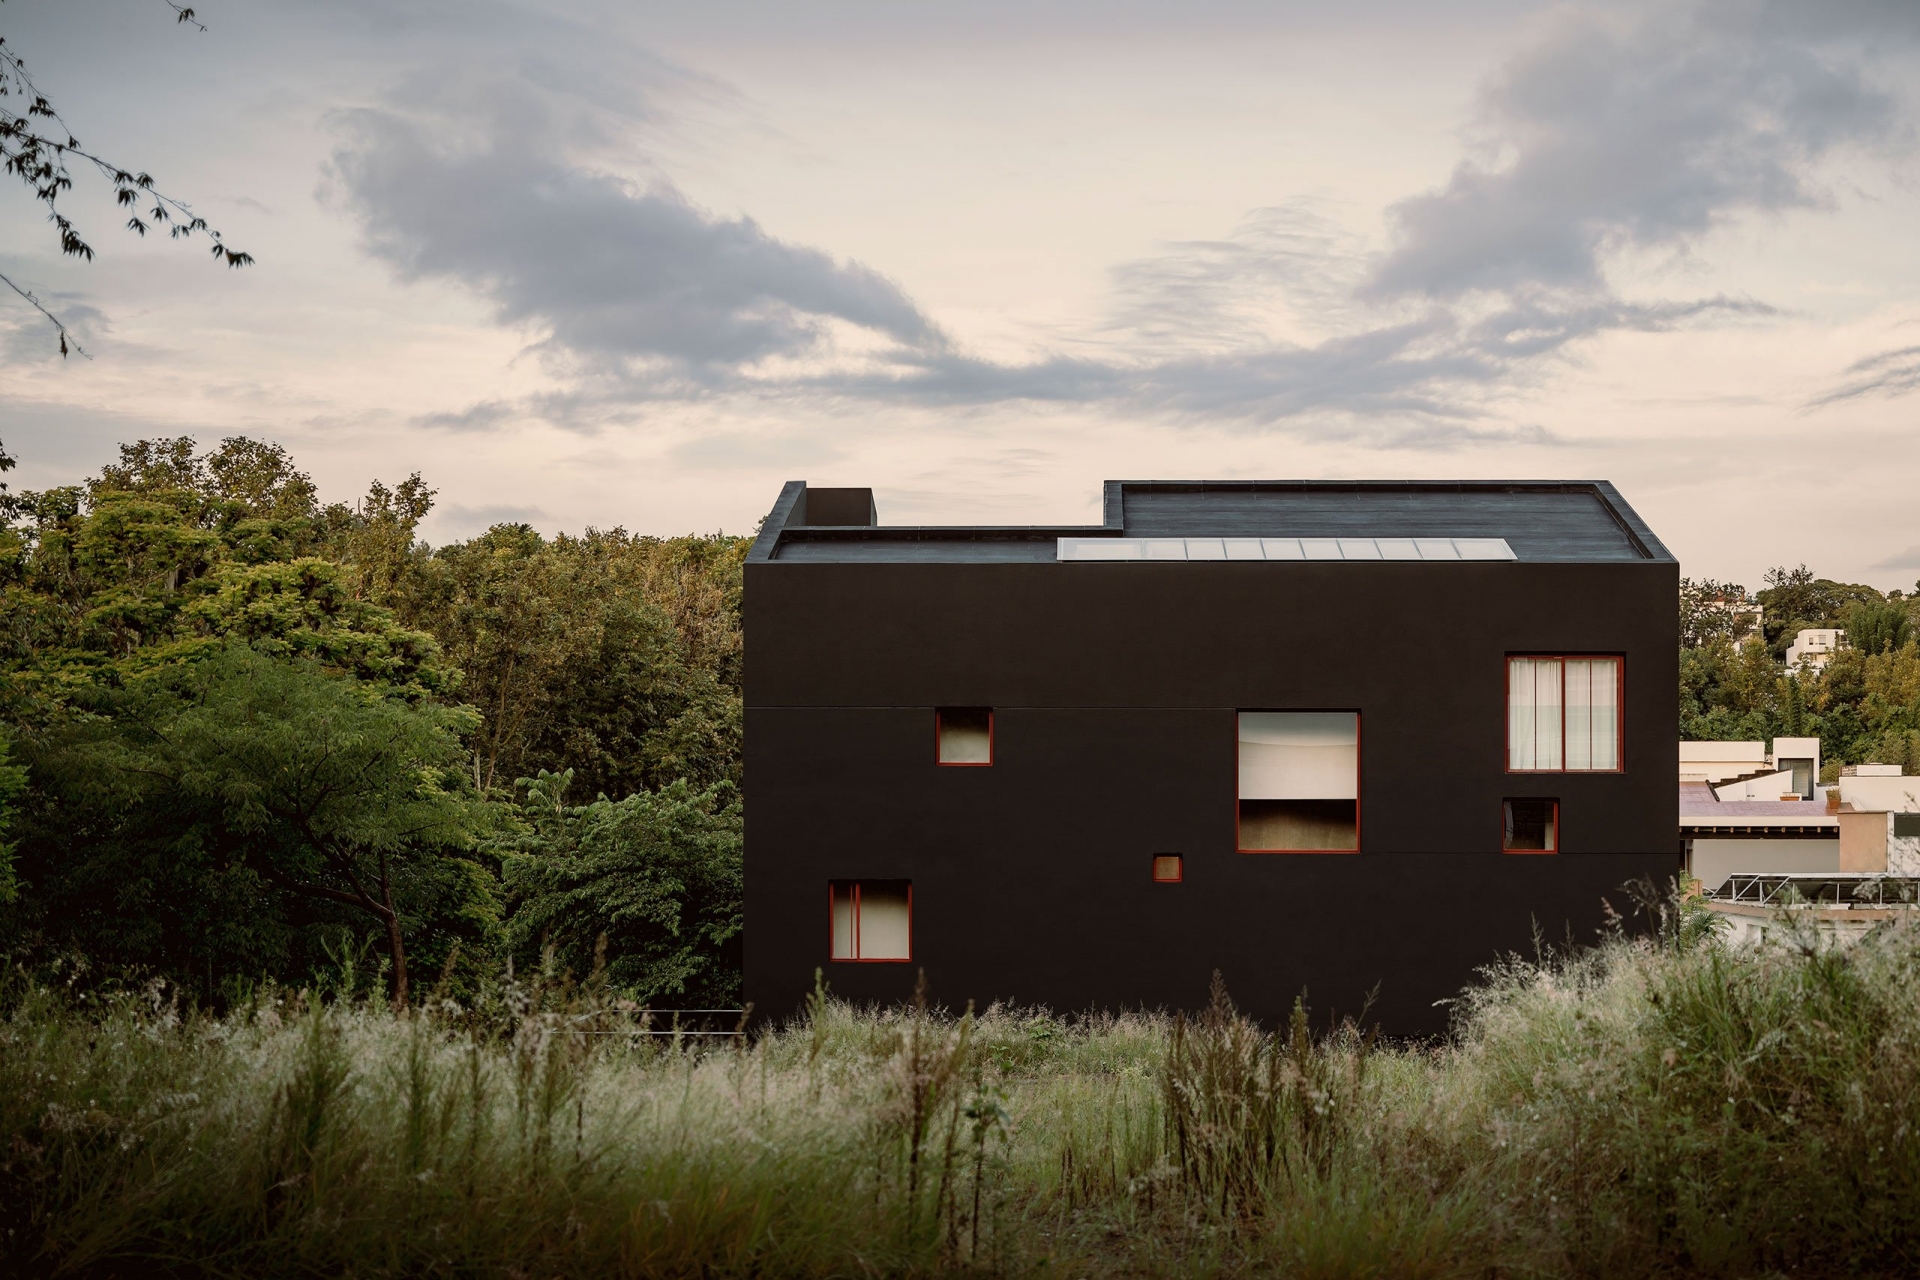 Ngôi nhà với mặt tiền màu đen bí ẩn, các cửa sổ với độ cao và kích thước khác nhau , nổi bật những những ngọn cây xanh rì cao vút. 